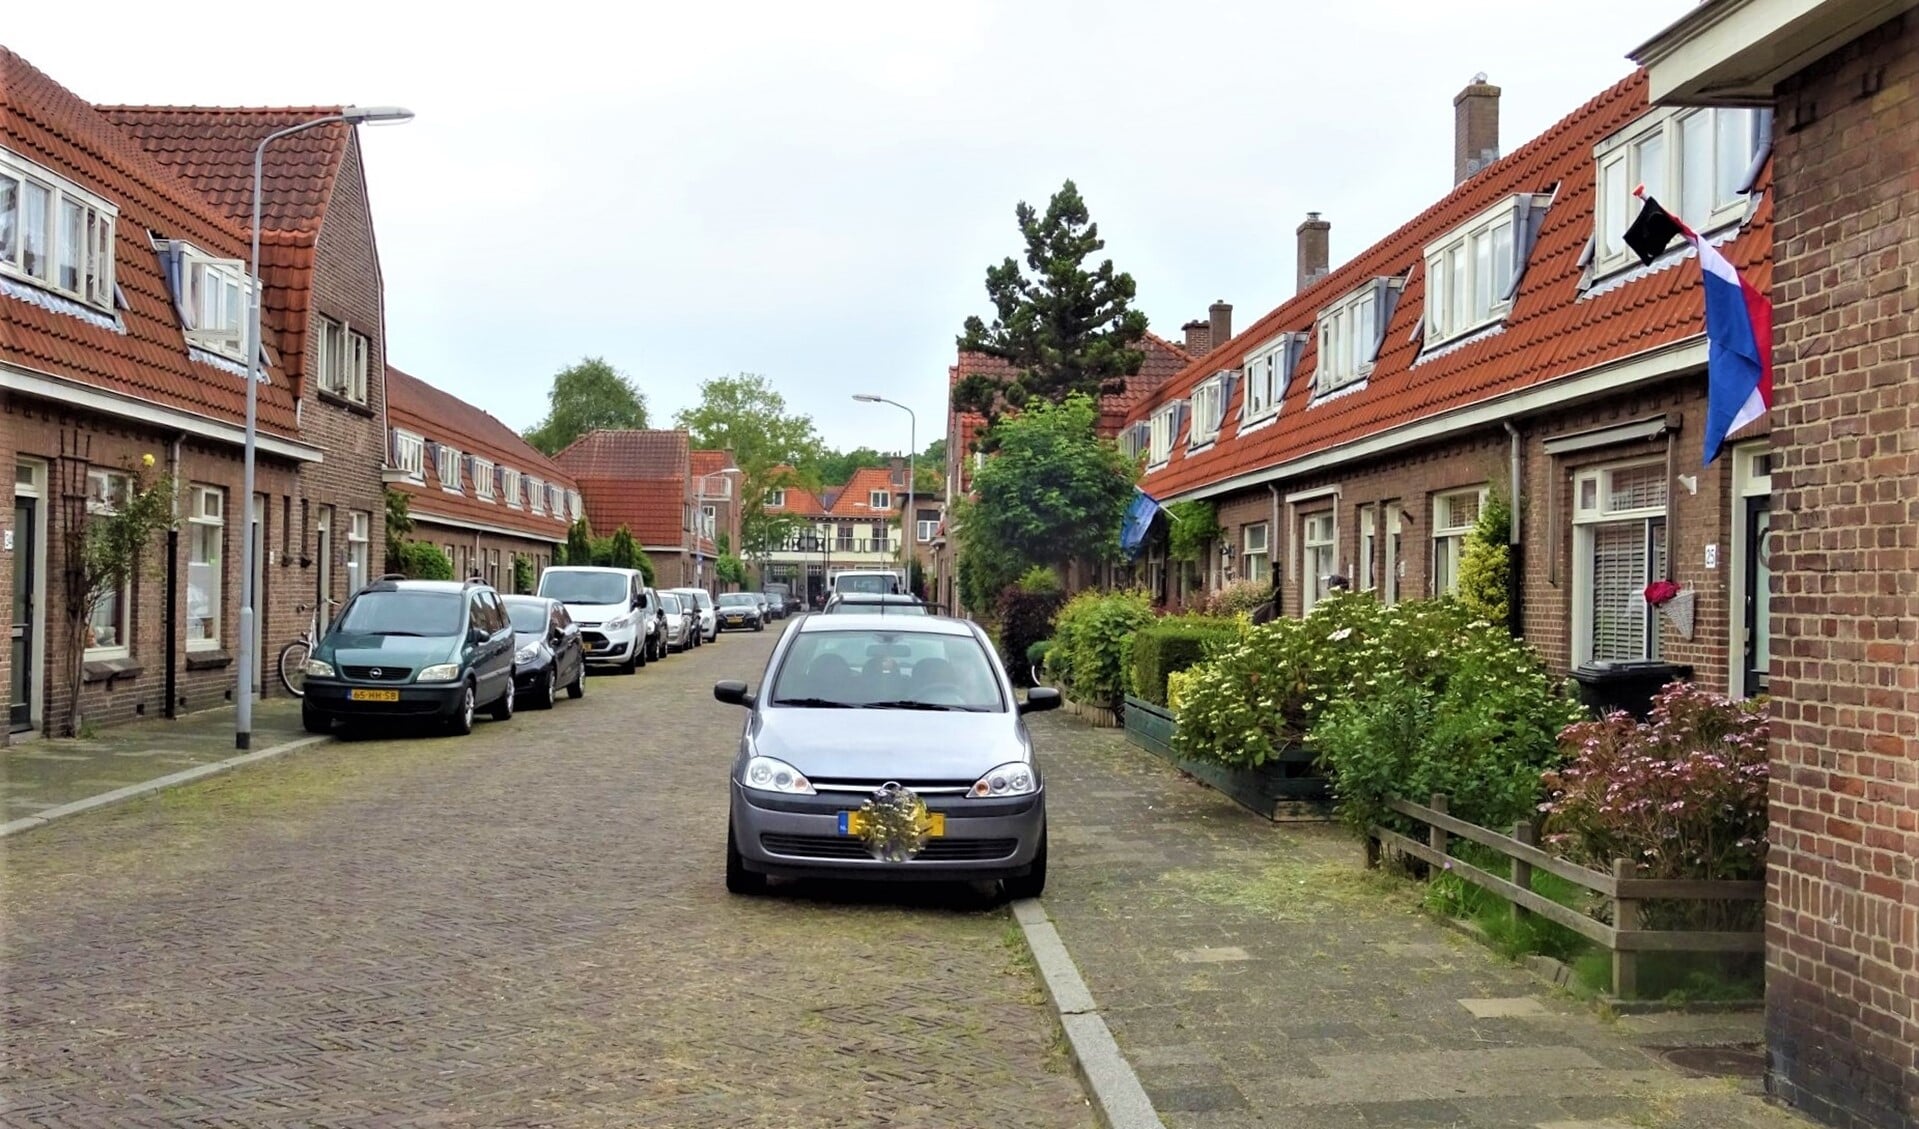 Straat in het Oranjekwartier in Voorburg (archieffoto Ap de Heus).